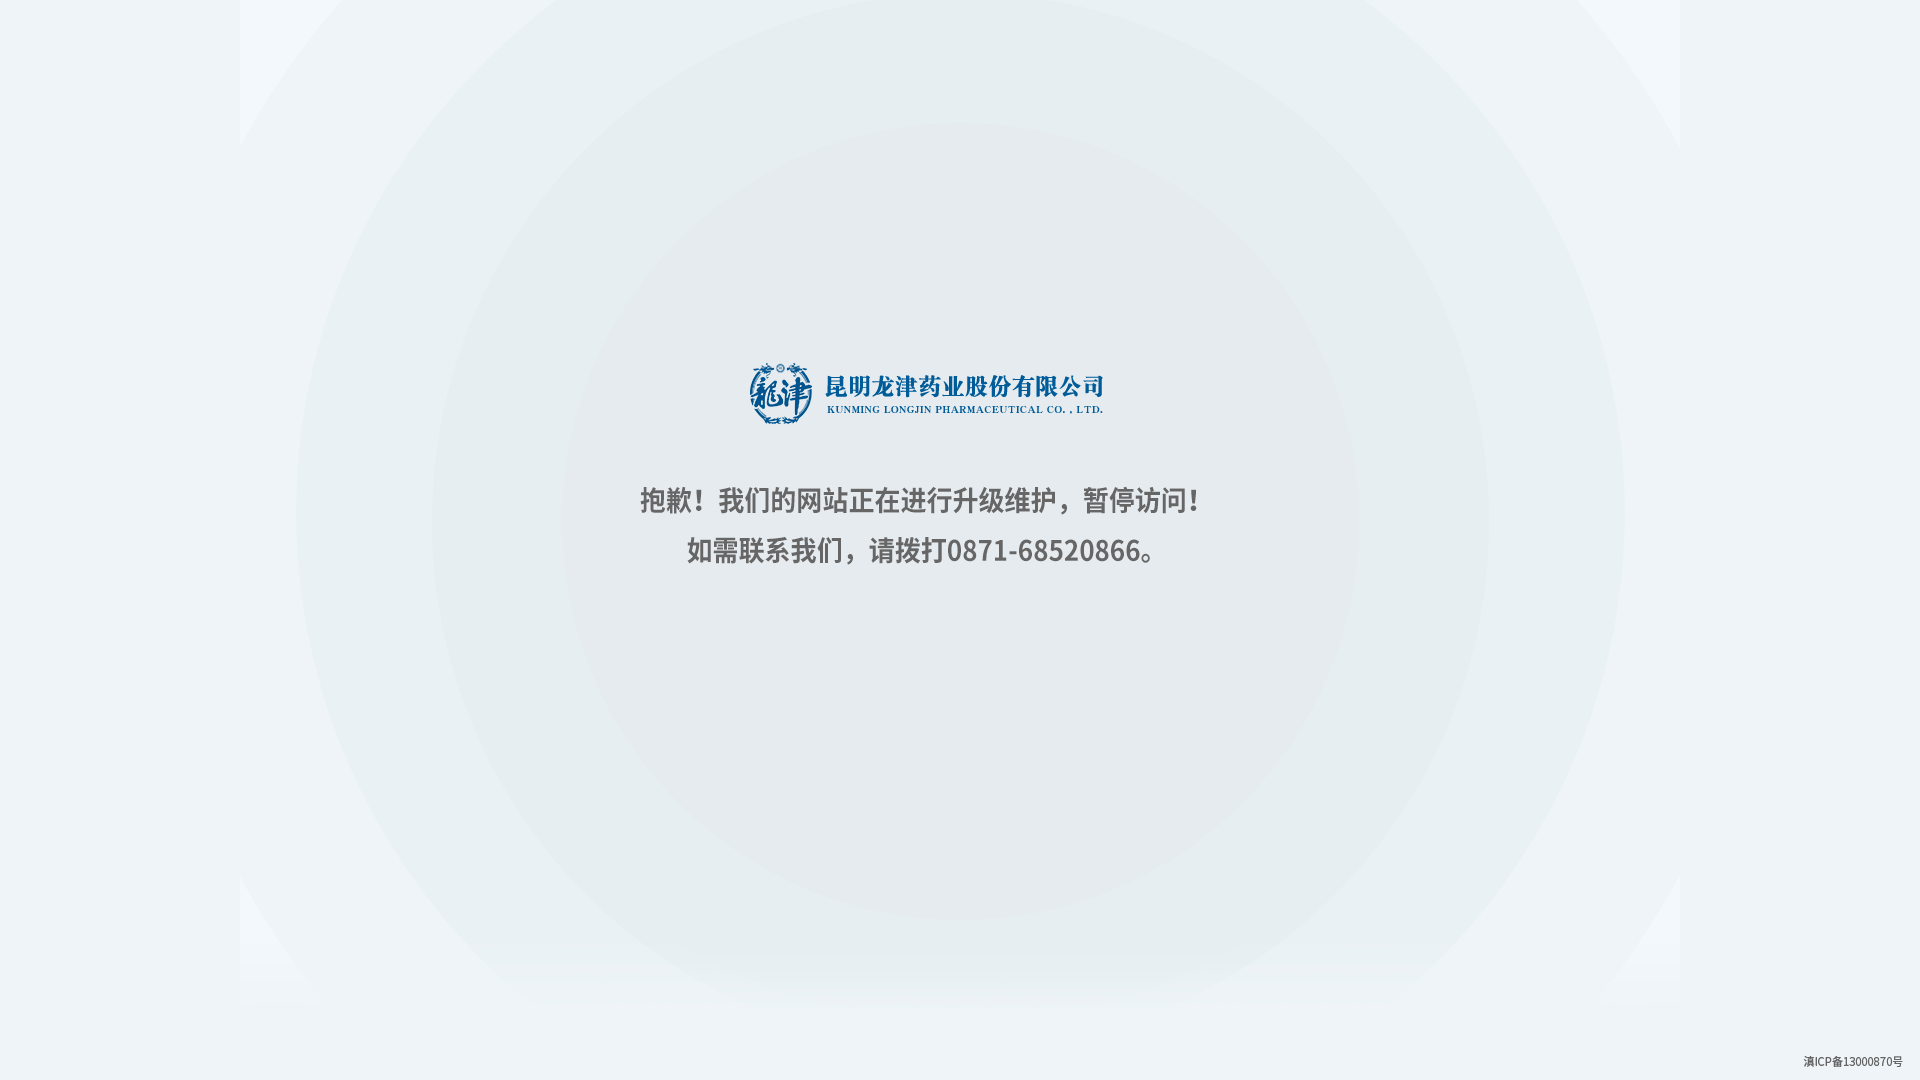 Kunming Longjin Pharmaceutical Co., Ltd.